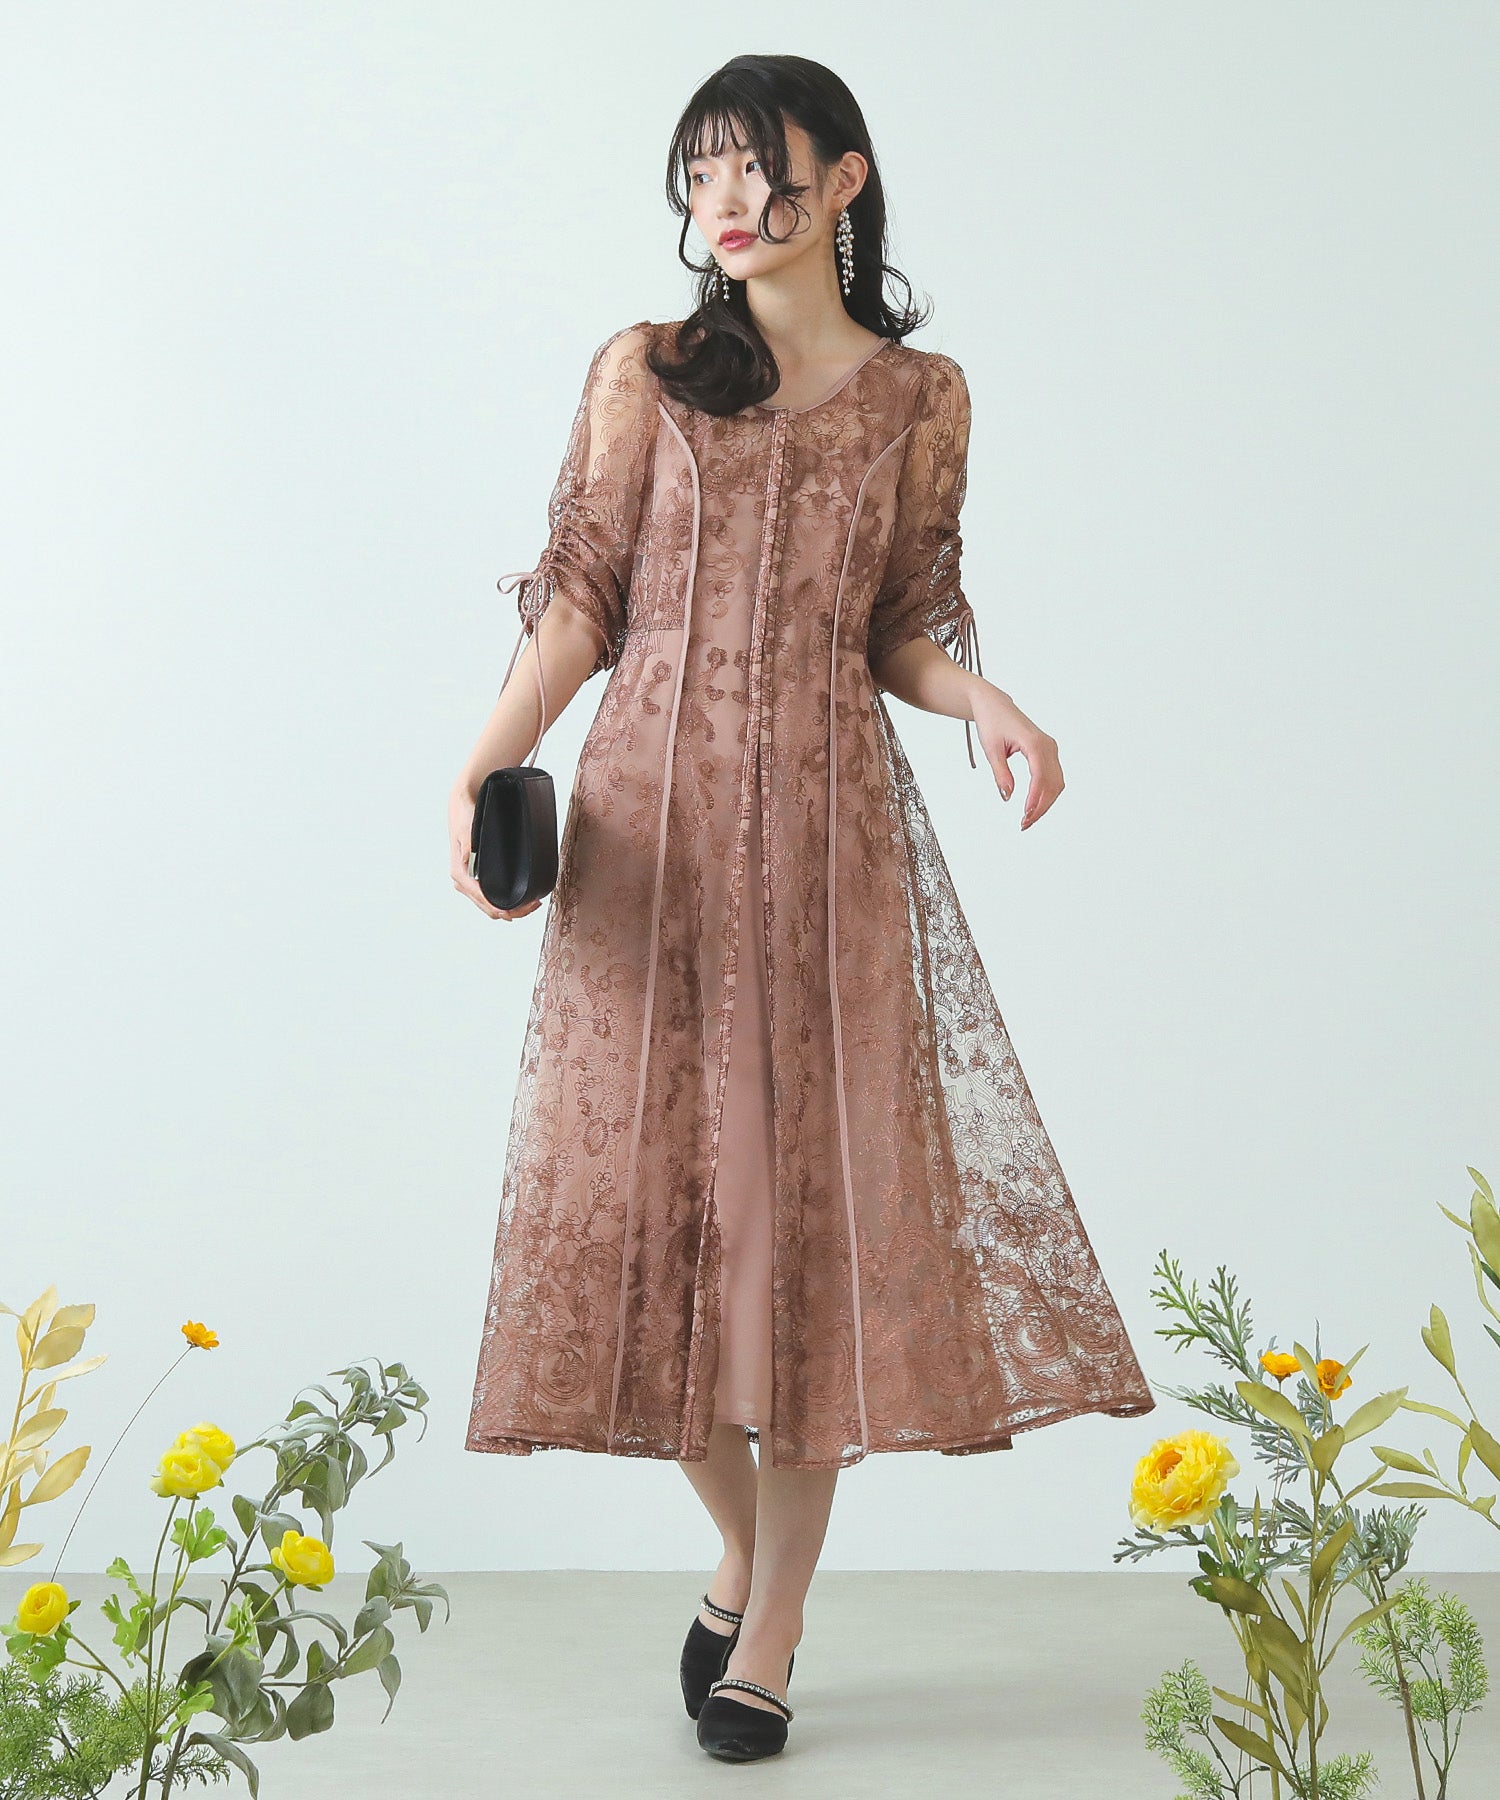 【etoll. 】 刺繍レイヤードドレス刺繍ドレス